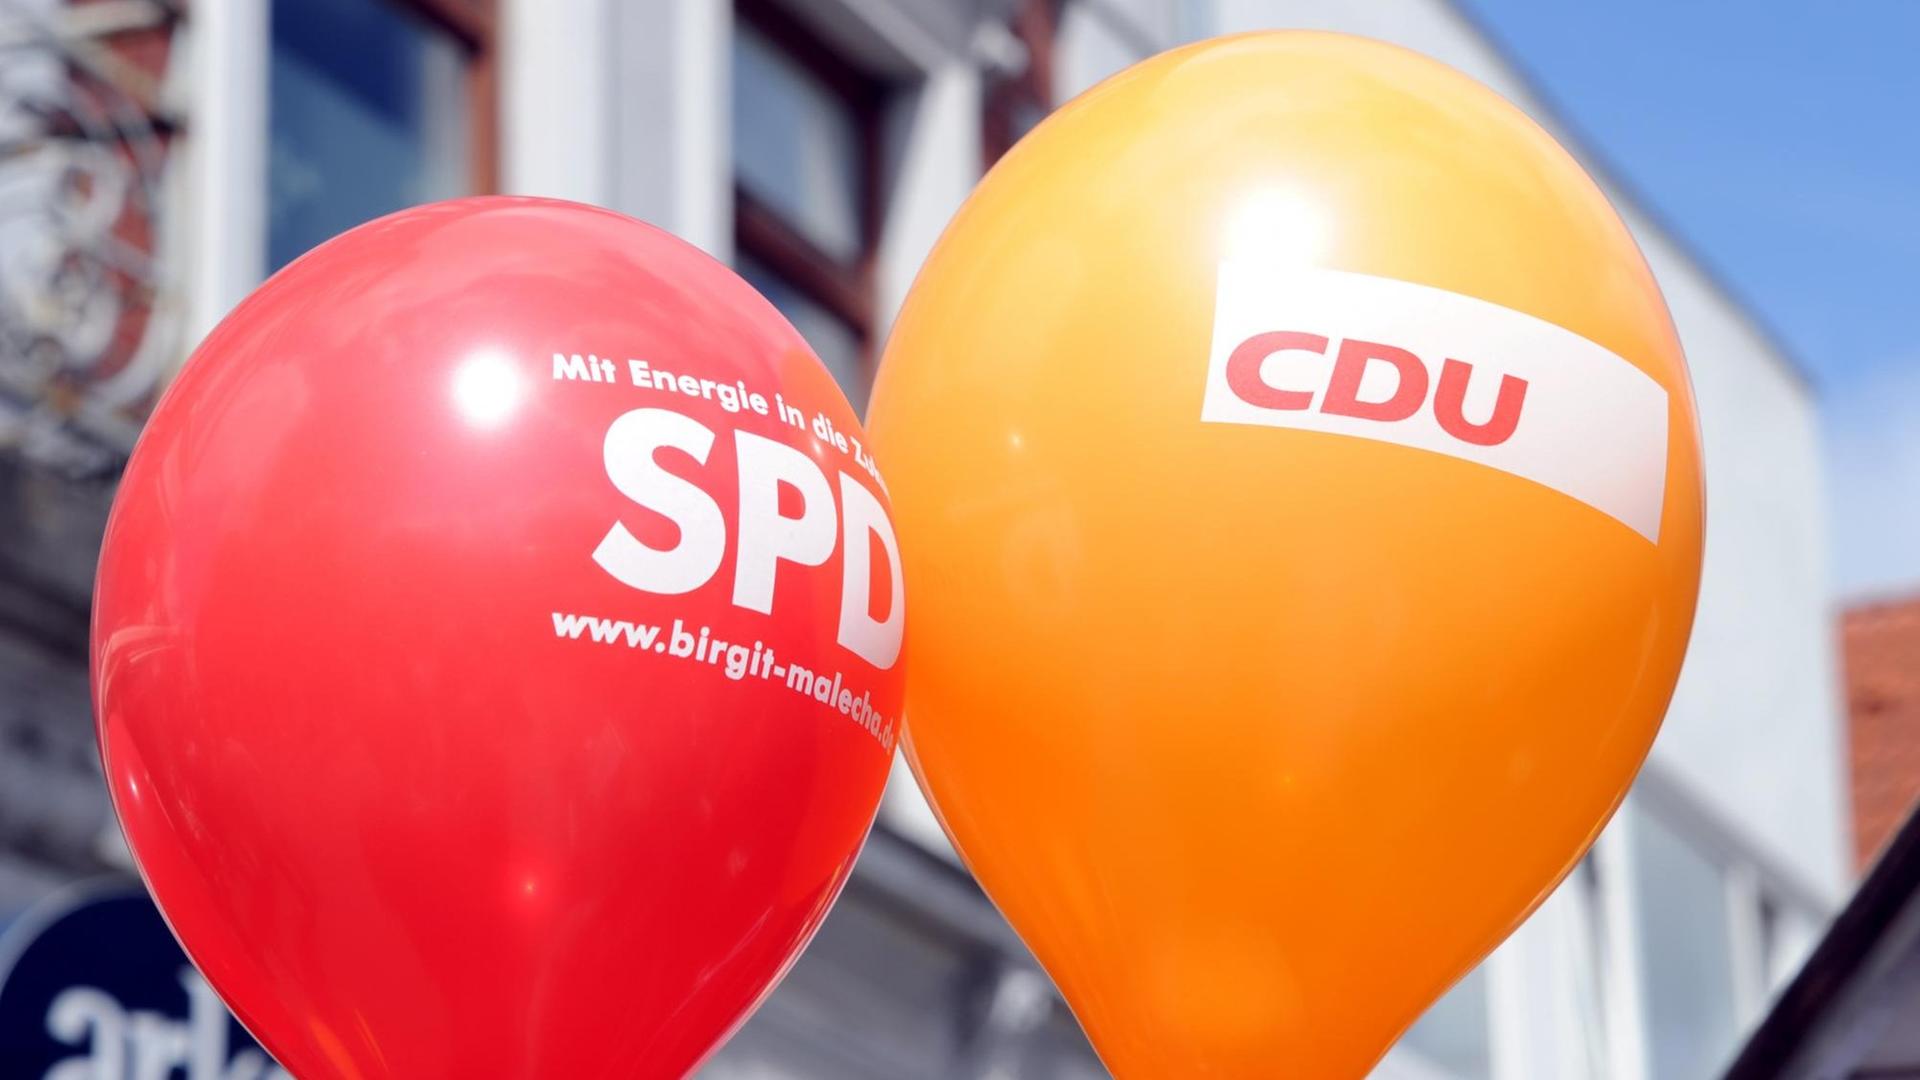  Die Namen der Parteien CDU und CSU auf schwarzem Hintergrund stehen neben dem Namen SPD auf rotem Hintergrund, darüber sind Bremsspuren zu sehen.